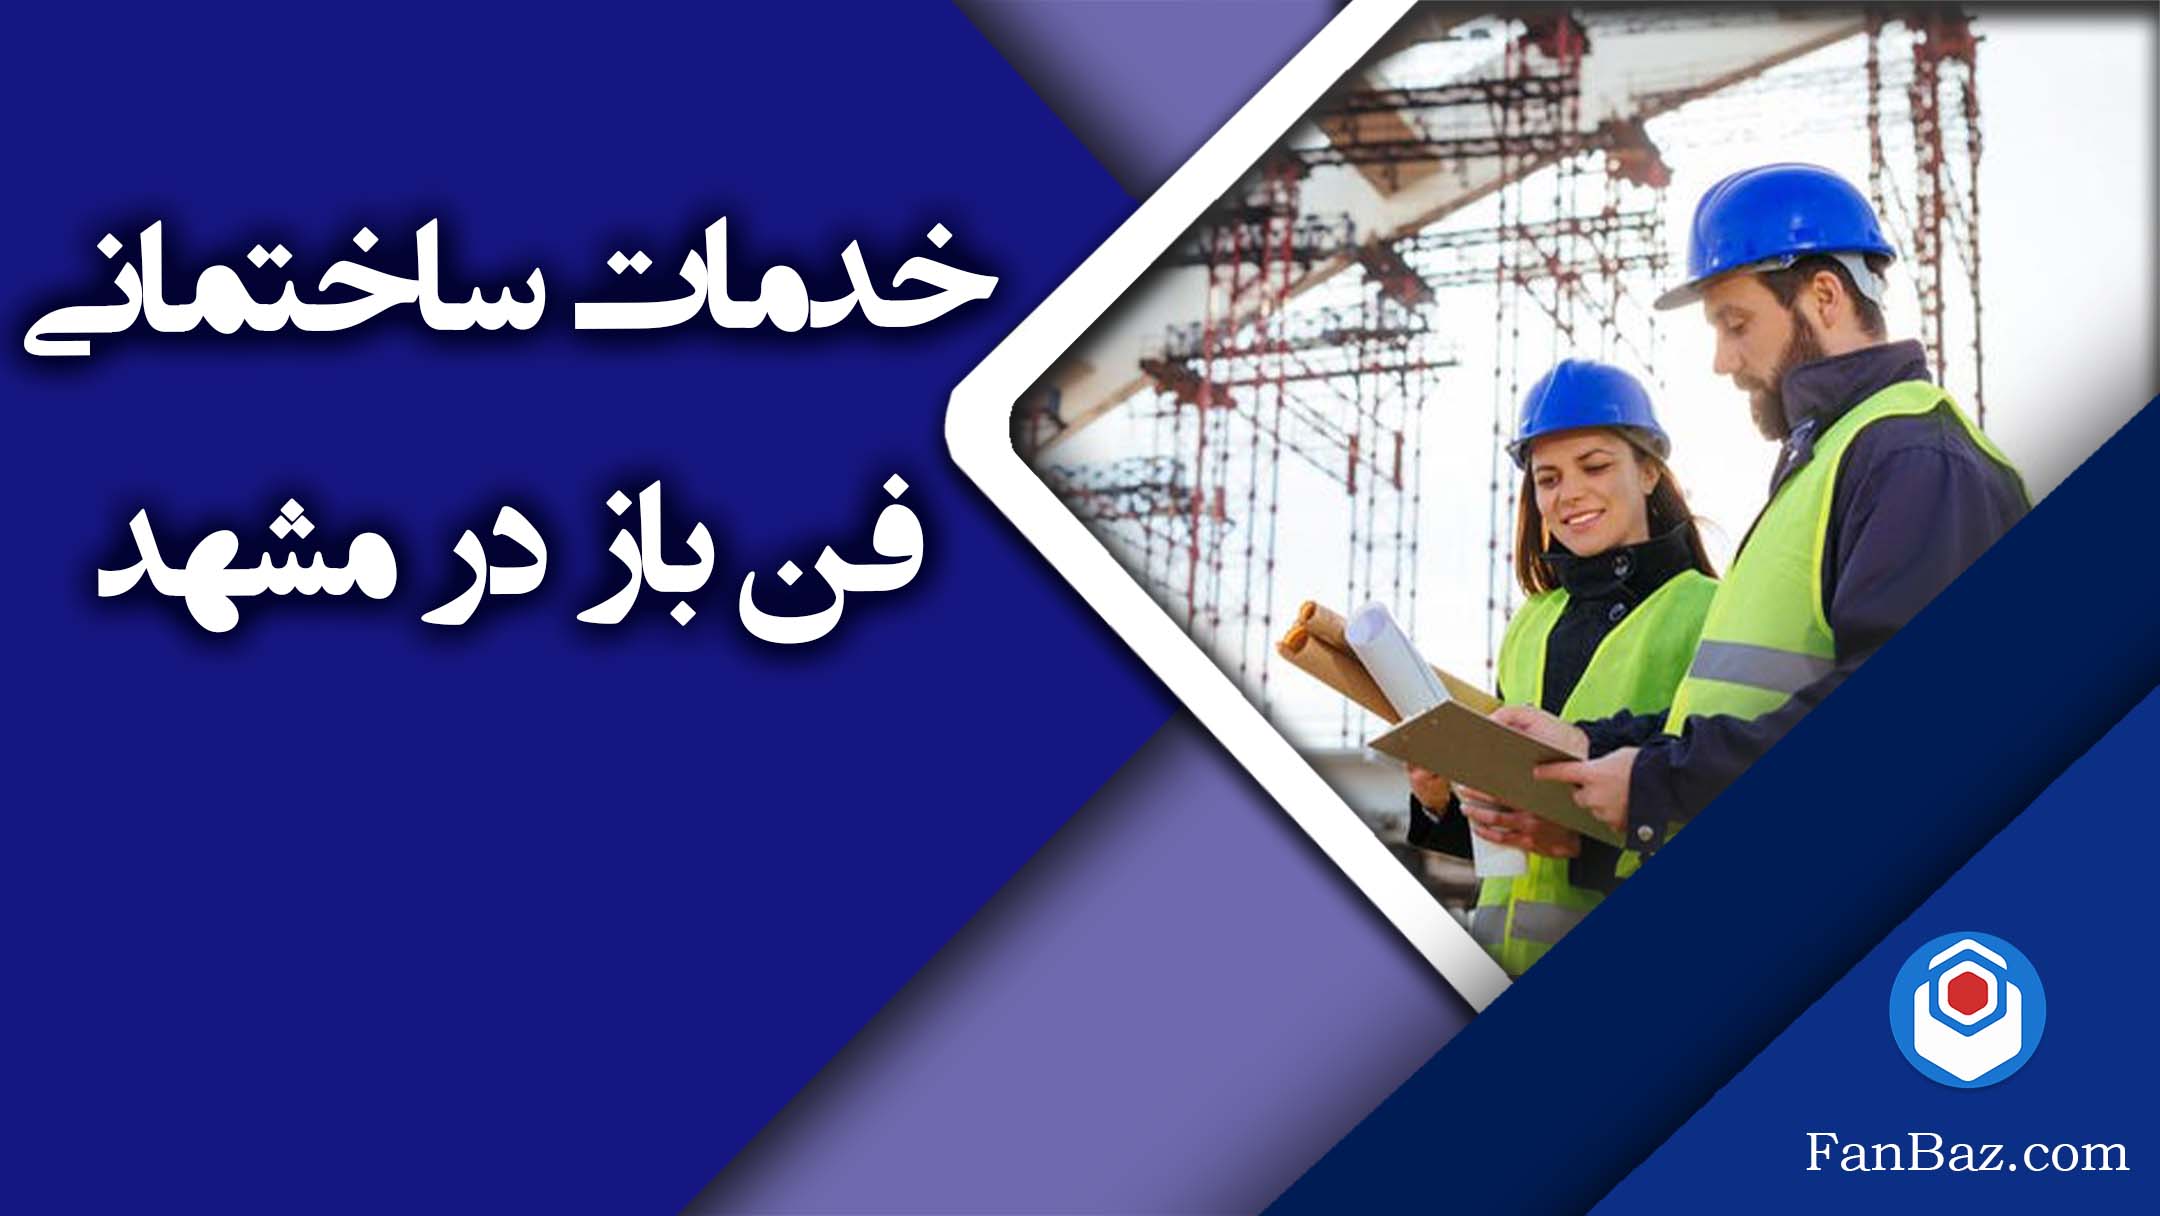 خدمات ساختمانی فن باز در مشهد